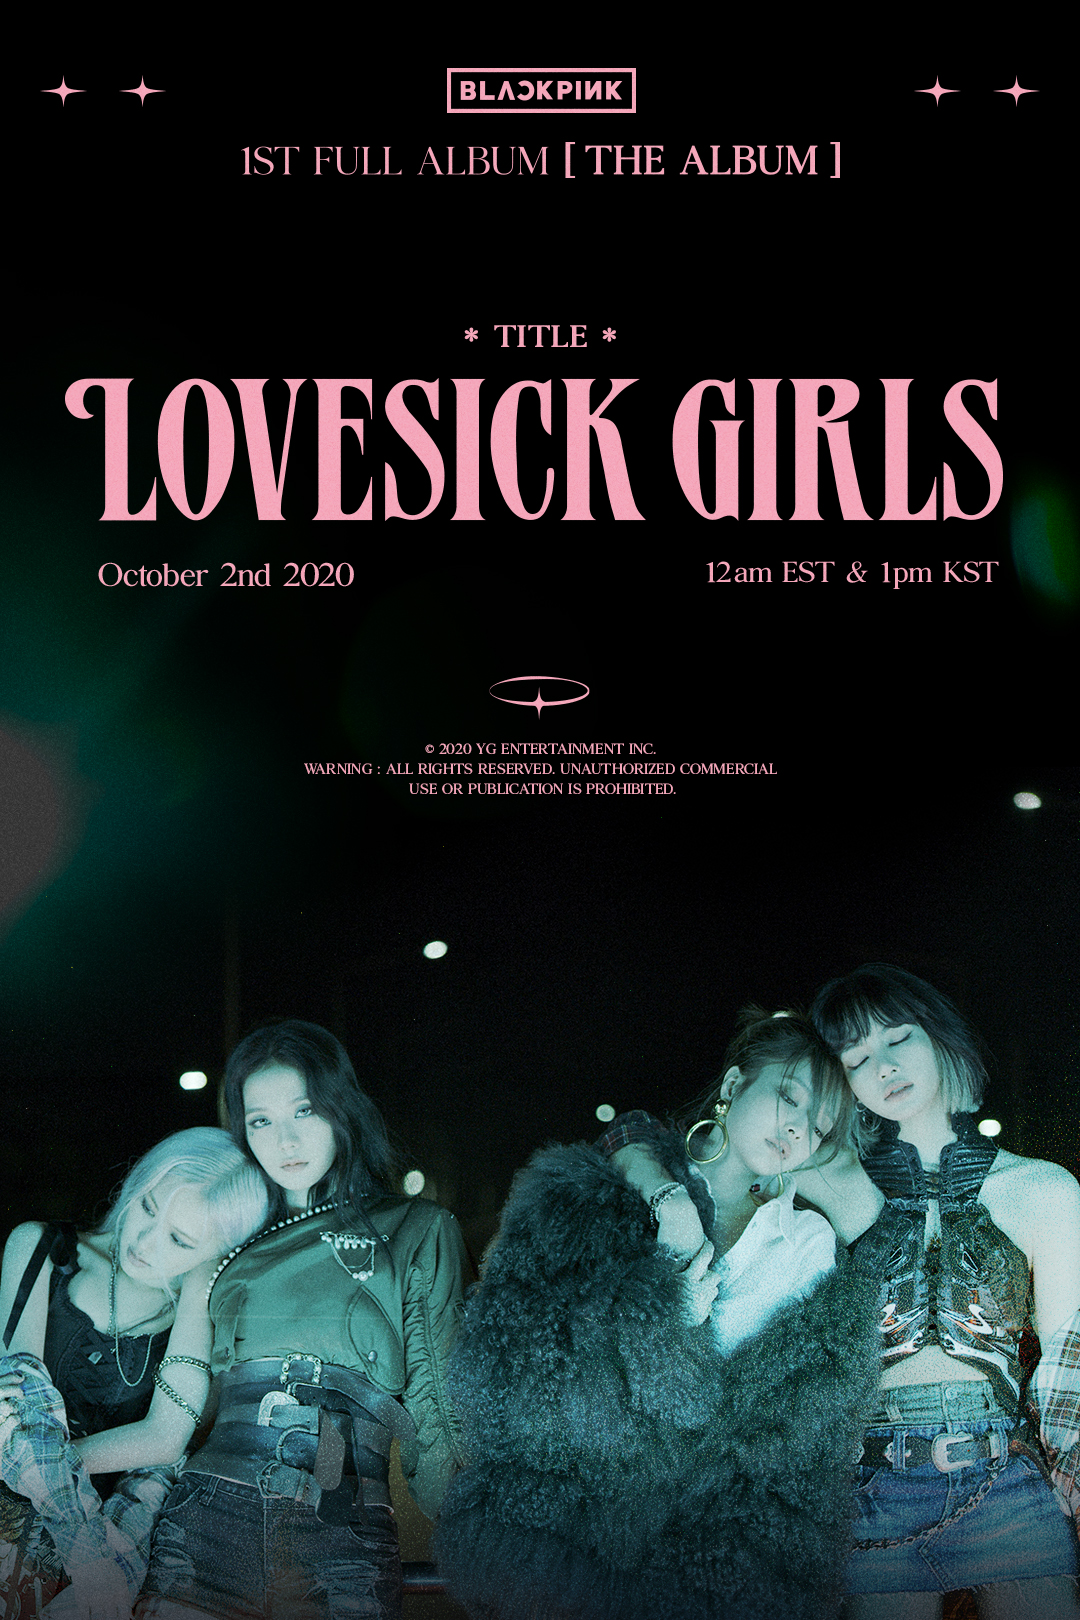 블랙핑크(BLACKPINK) 첫 정규 앨범 ‘Lovesick Girls’ 티저 포스터